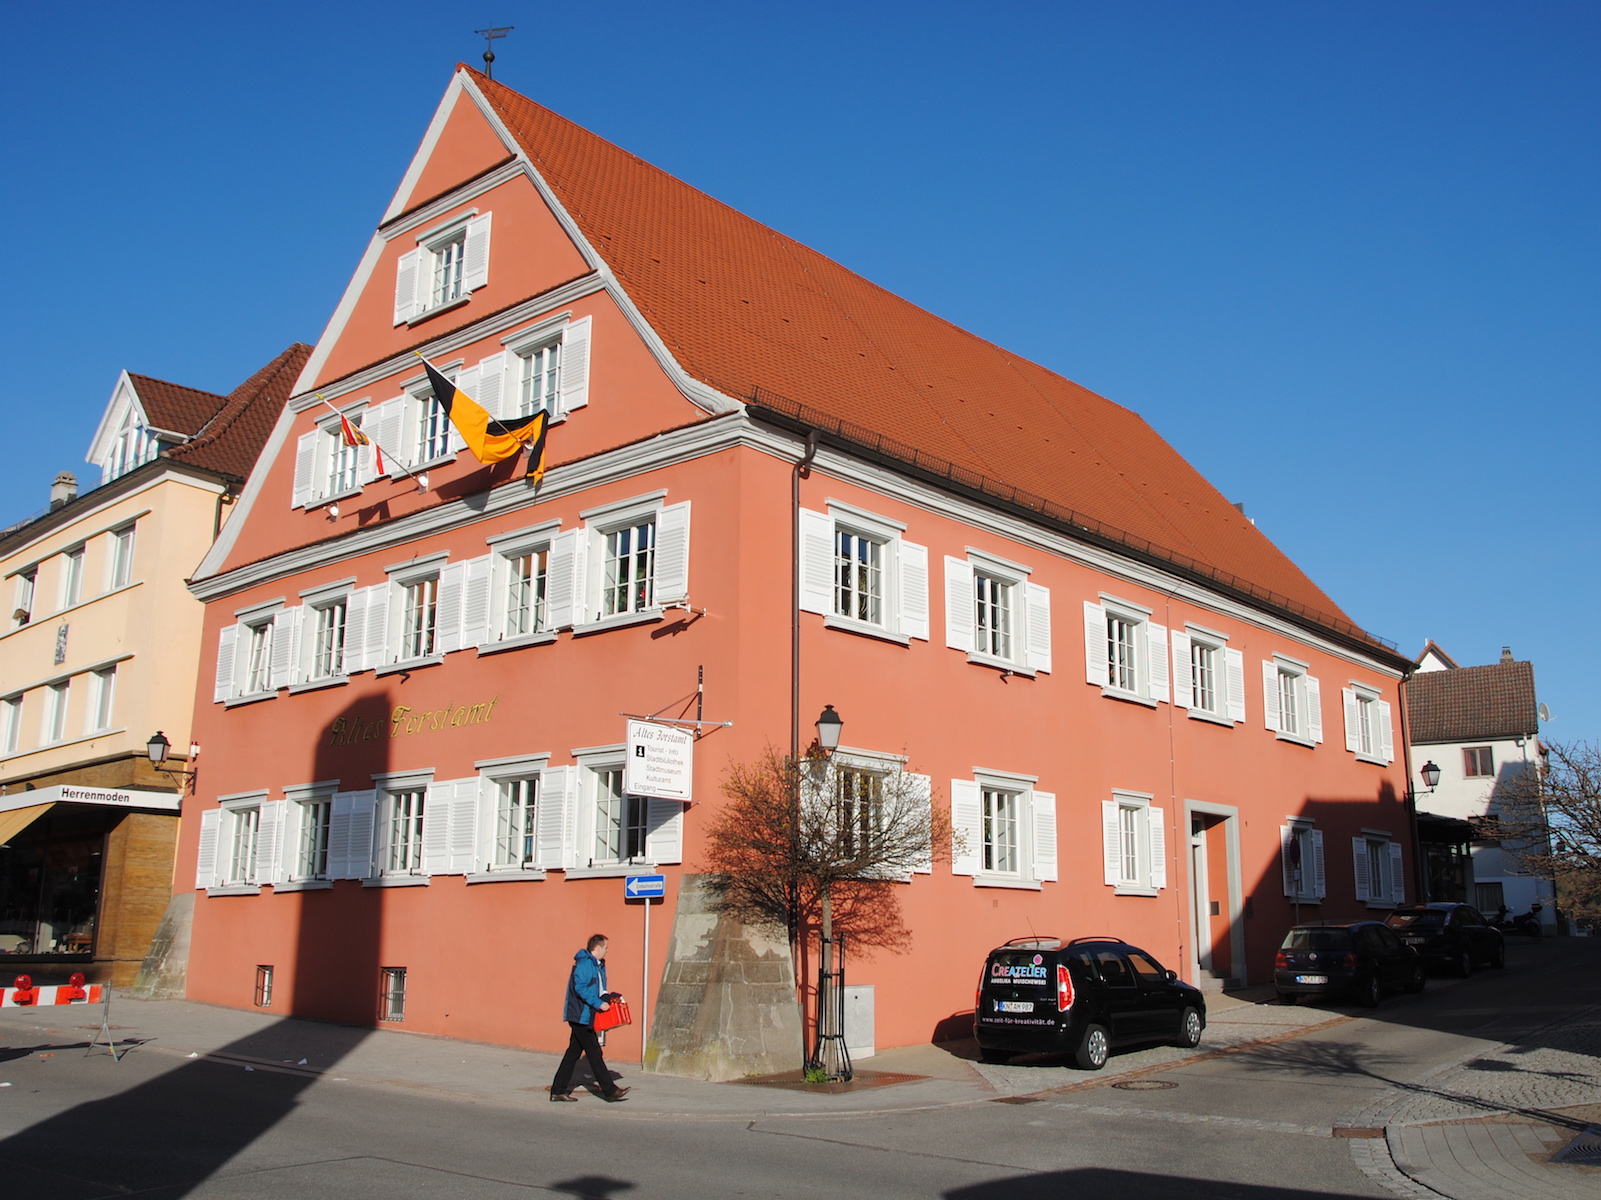  Le centre culturel « Altes Forstamt » 